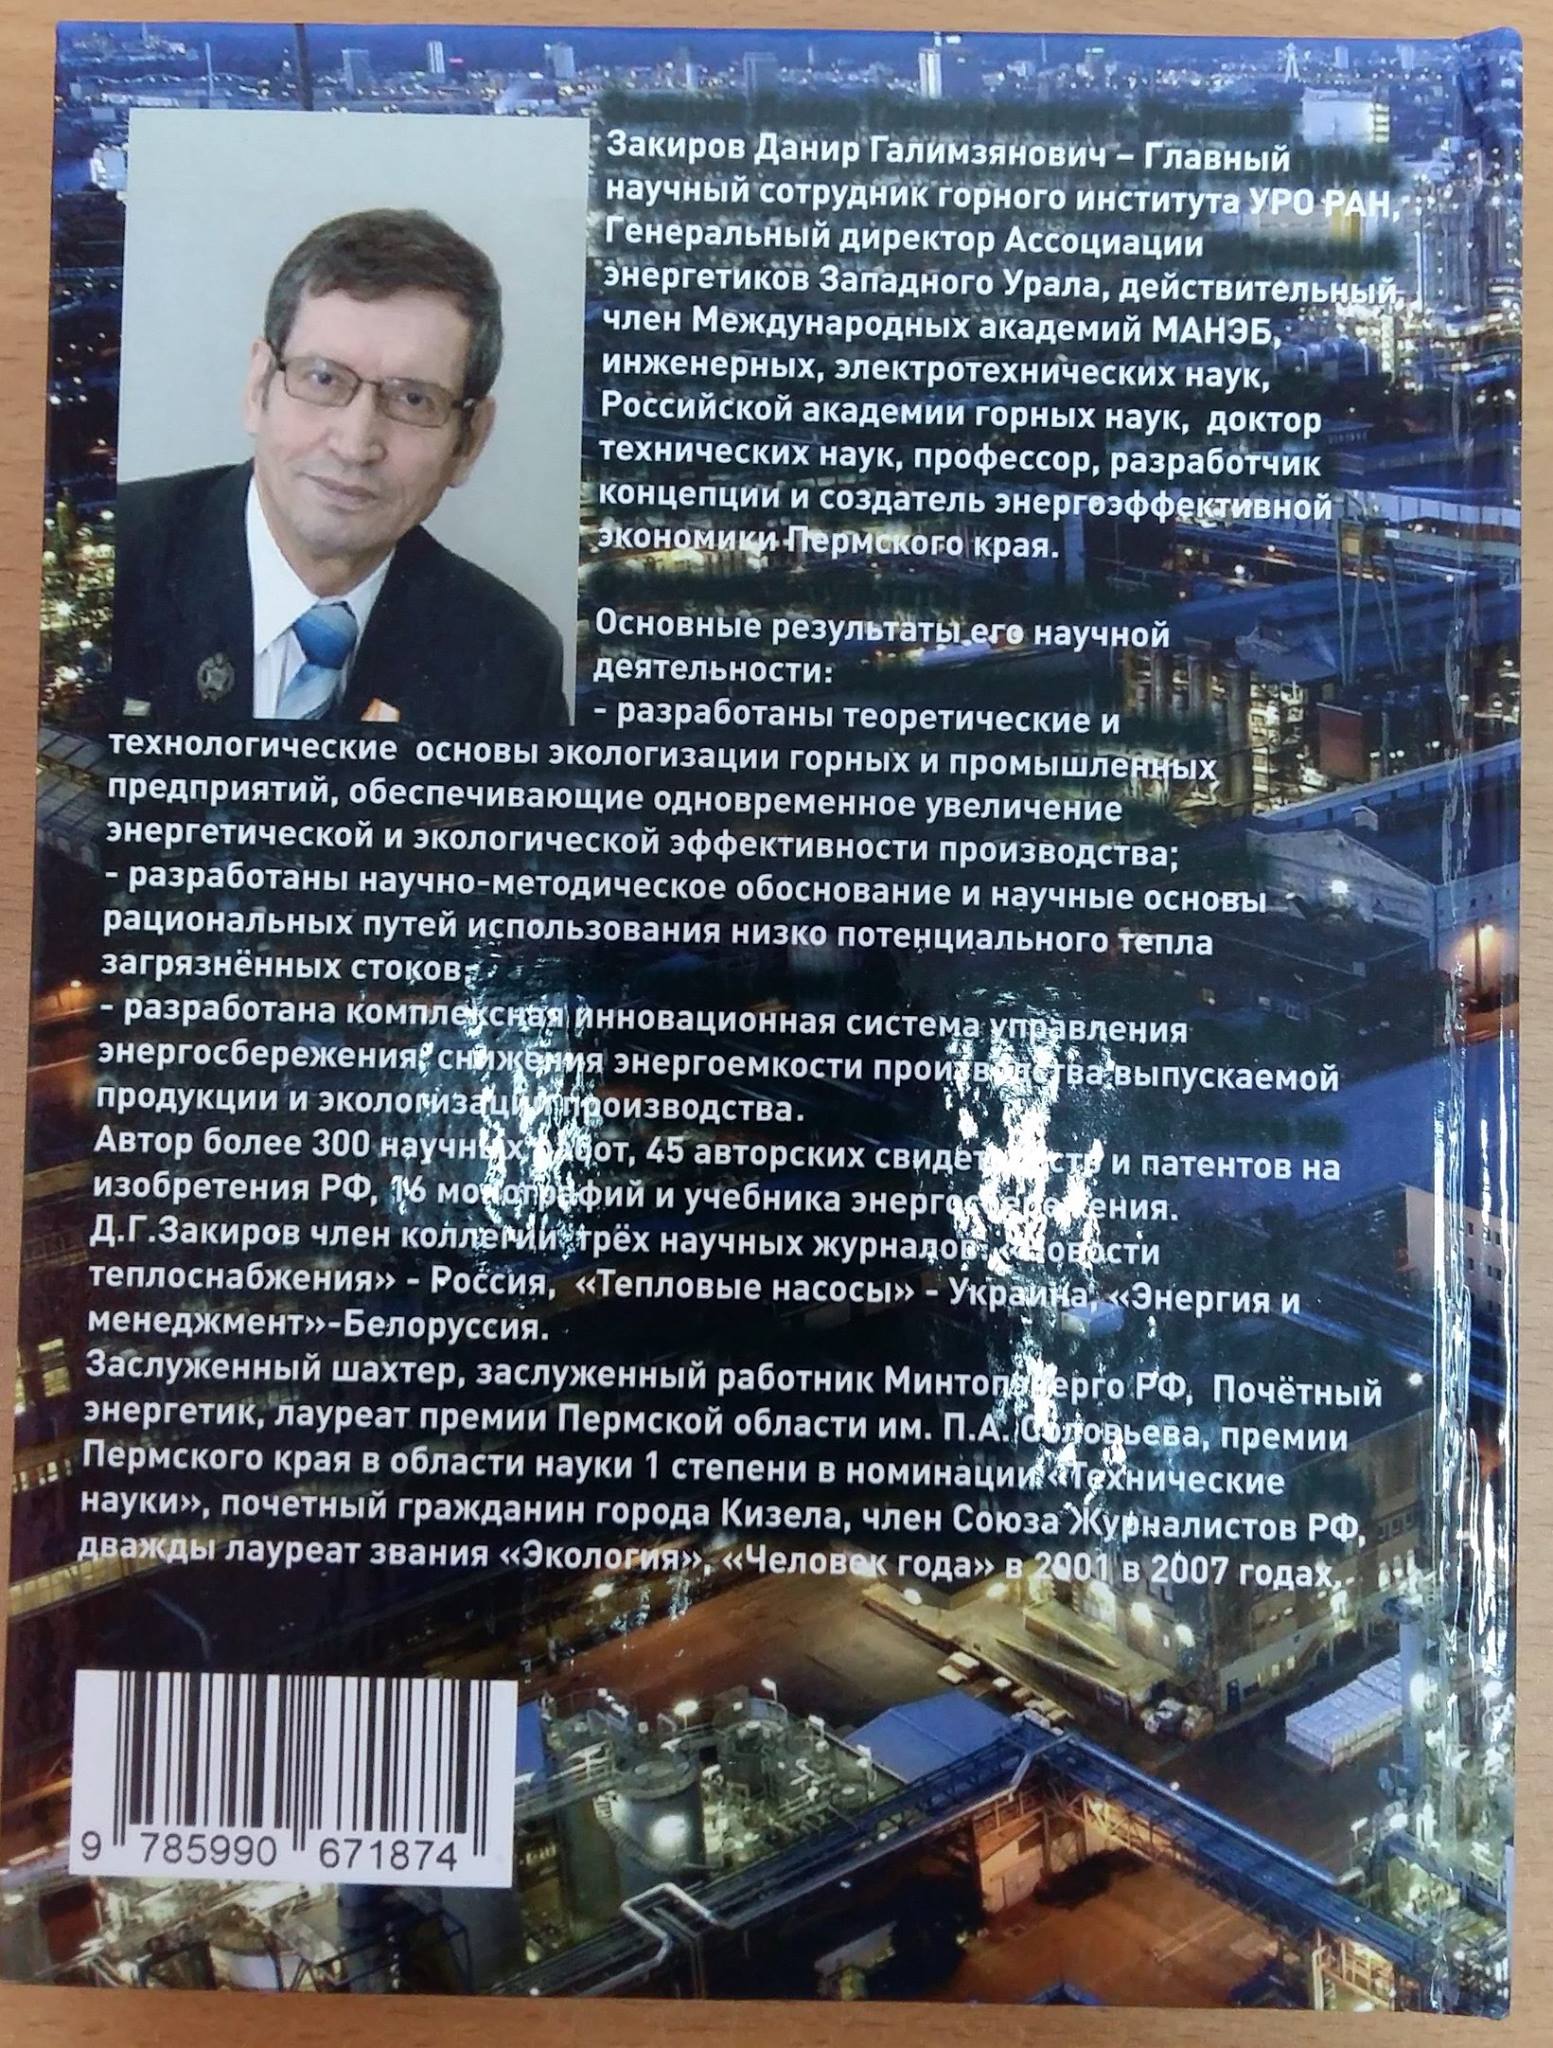 Вышла книга «Многолетний опыт повышения энергоэффективности на предприятиях Западного Урала